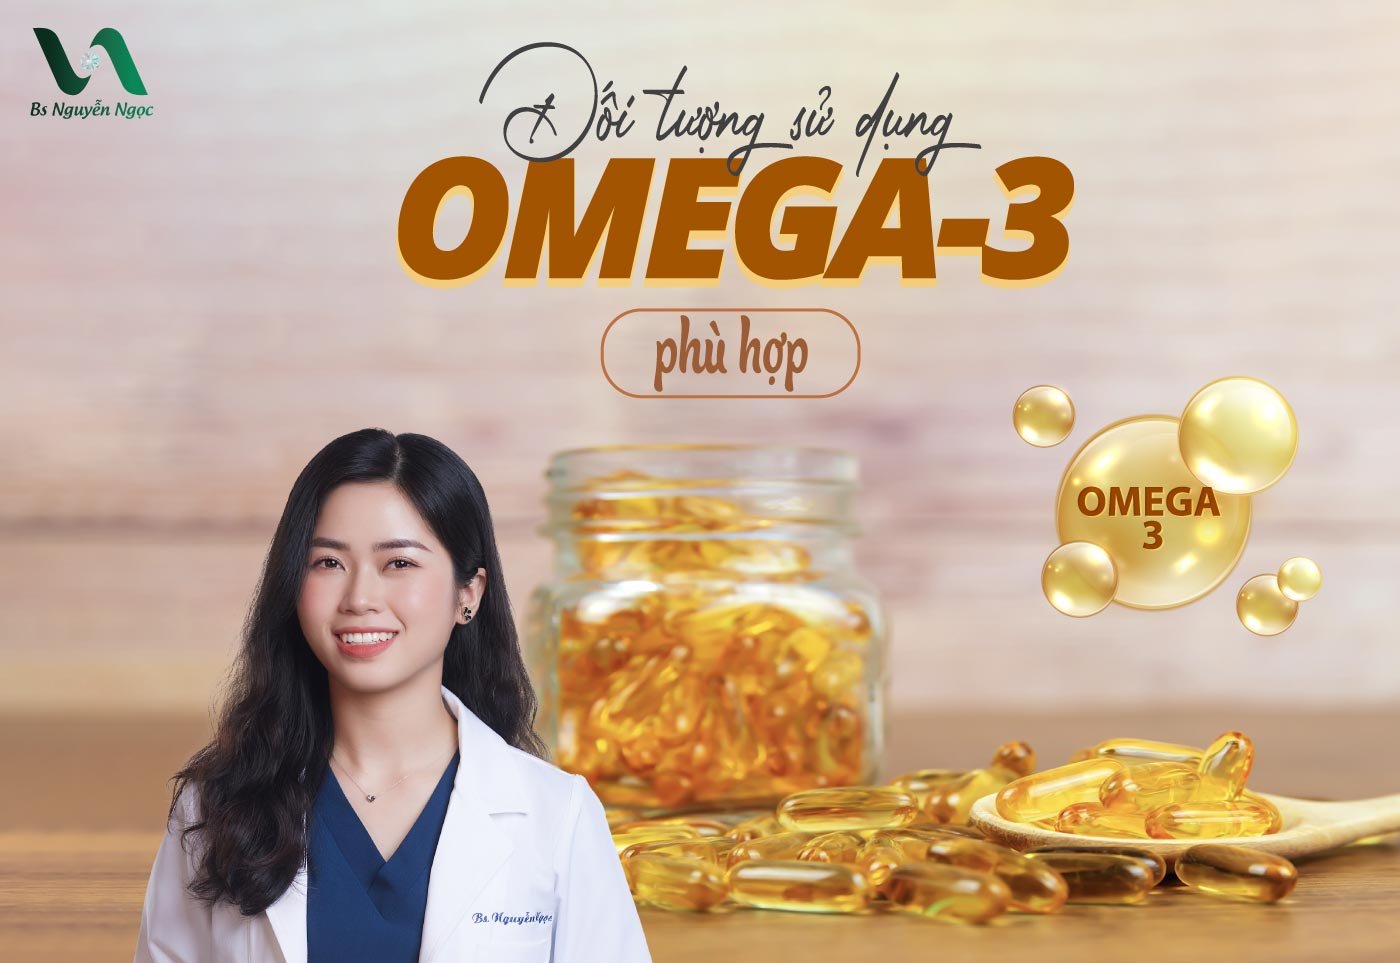 Đối tượng sử dụng omega-3 phù hợp